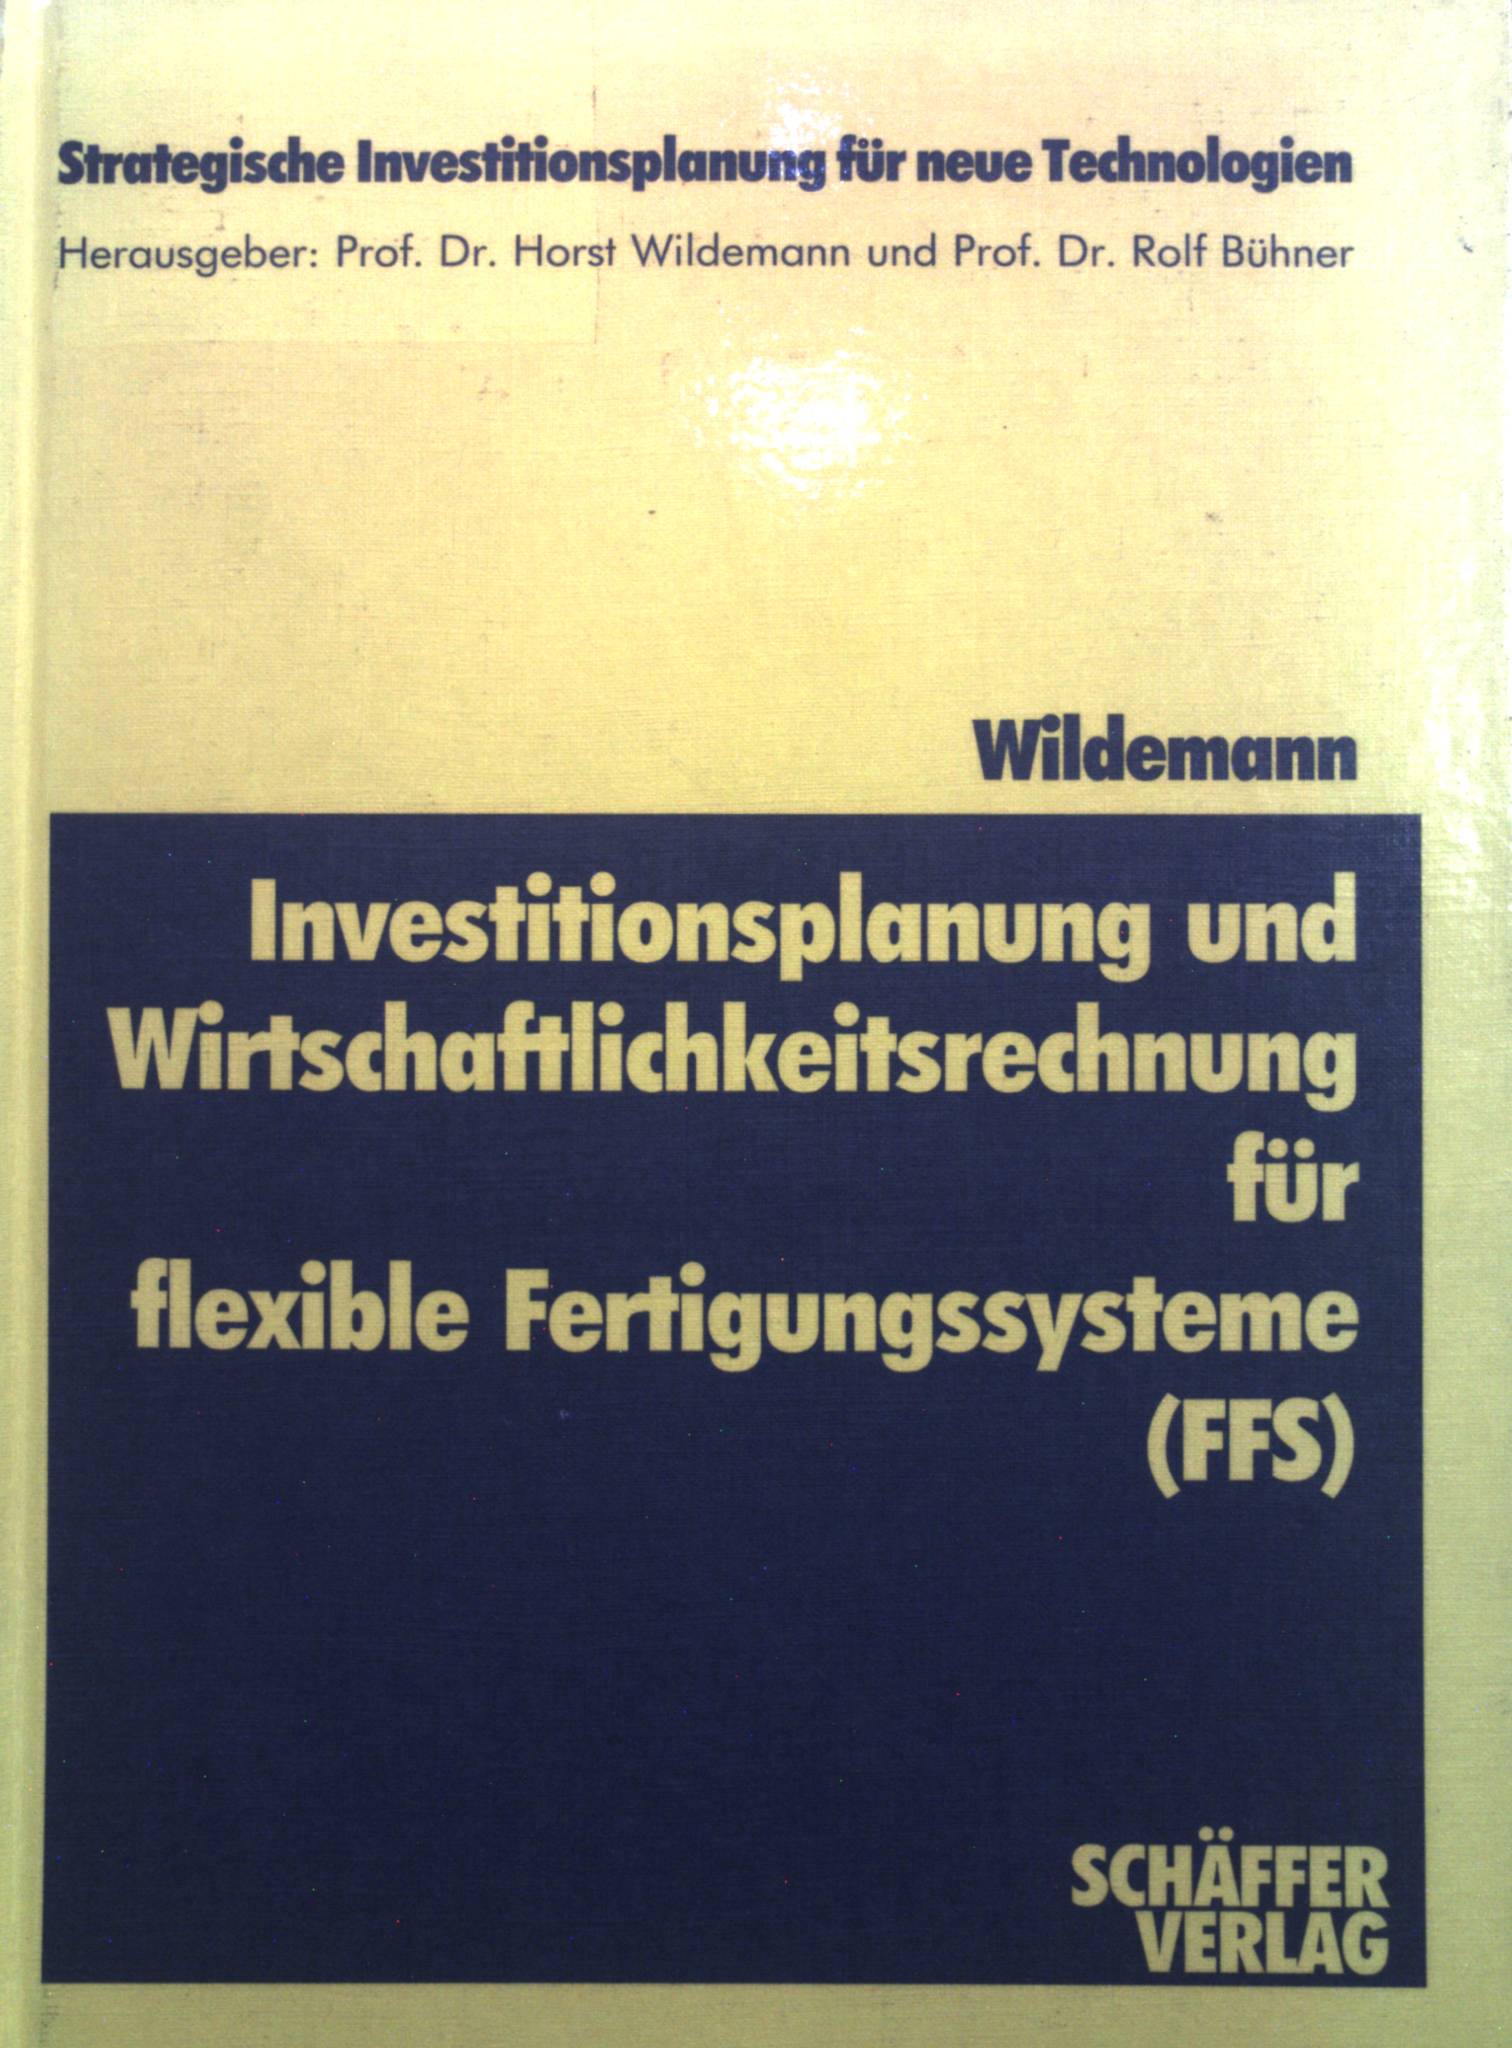 Investitionsplanung und Wirtschaftlichkeitsrechnung für flexible Fertigungssysteme (FFS). Strategische Investitionsplanung für neue Technologien ; Bd. 3 - Wildemann, Horst